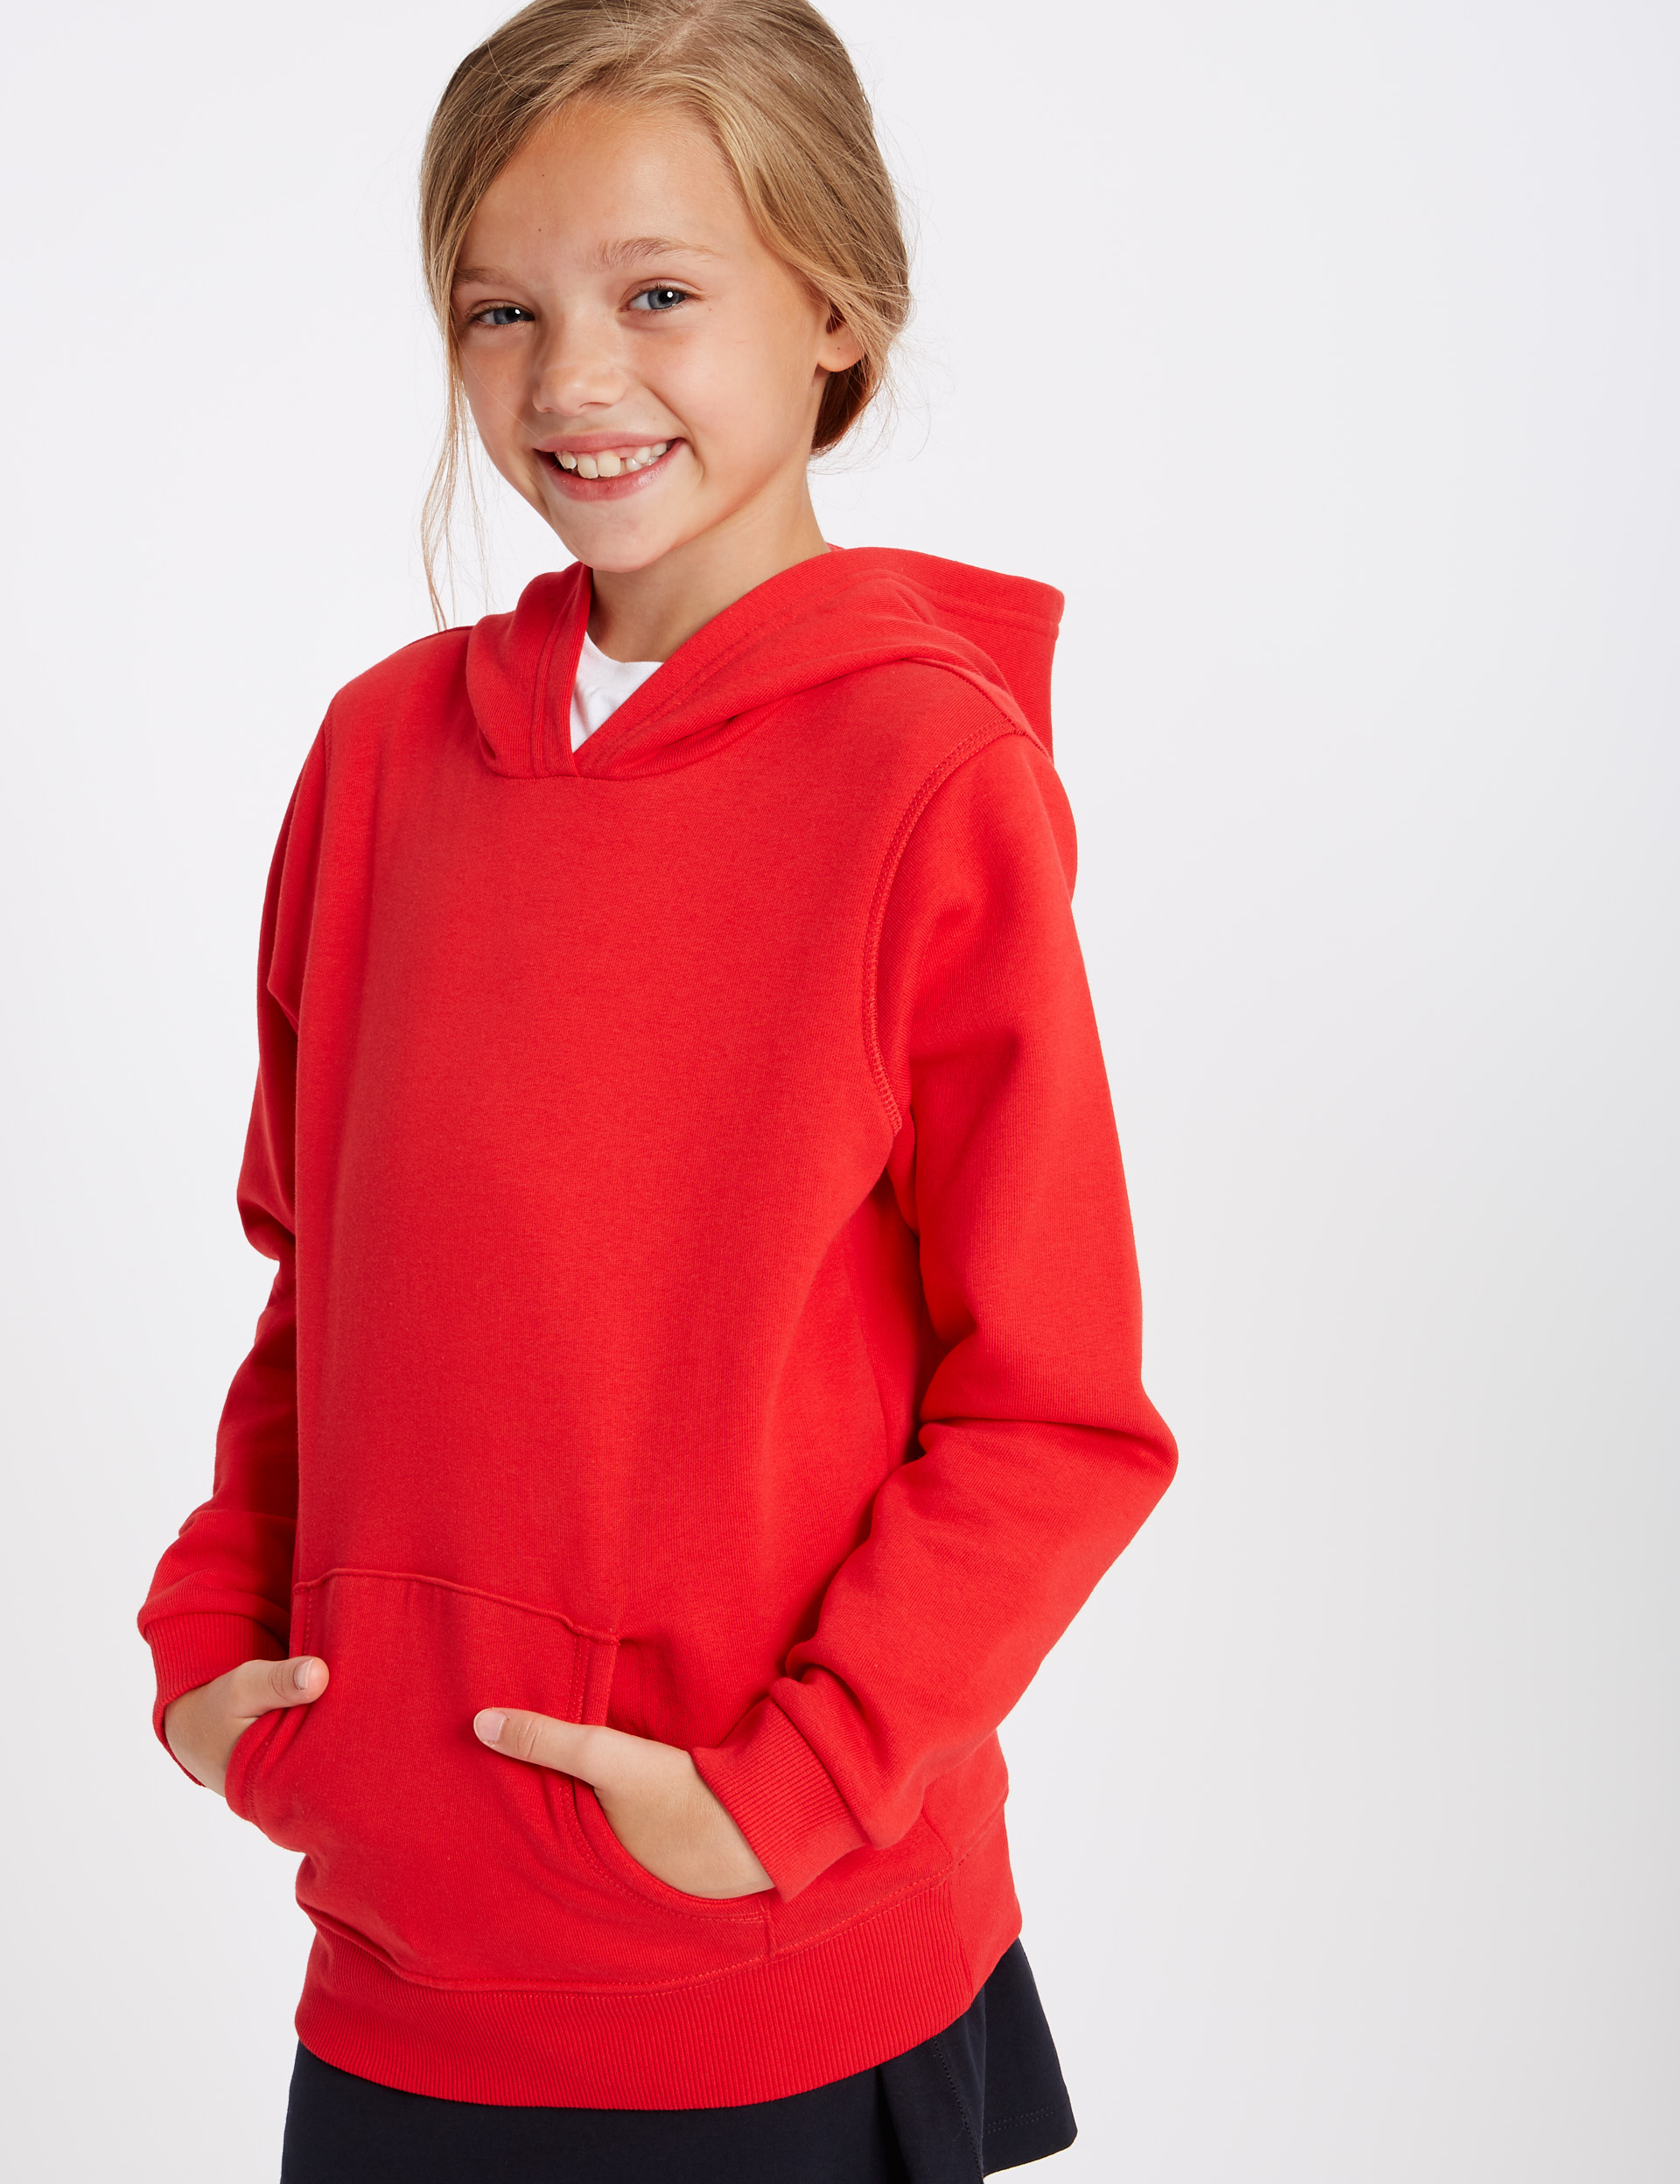 Unisex Boys Girls Plain Zip Up Hooded Sweatshirt Hoodies Top Jumper School Wear Hoodies UK Size 1-13 Years 